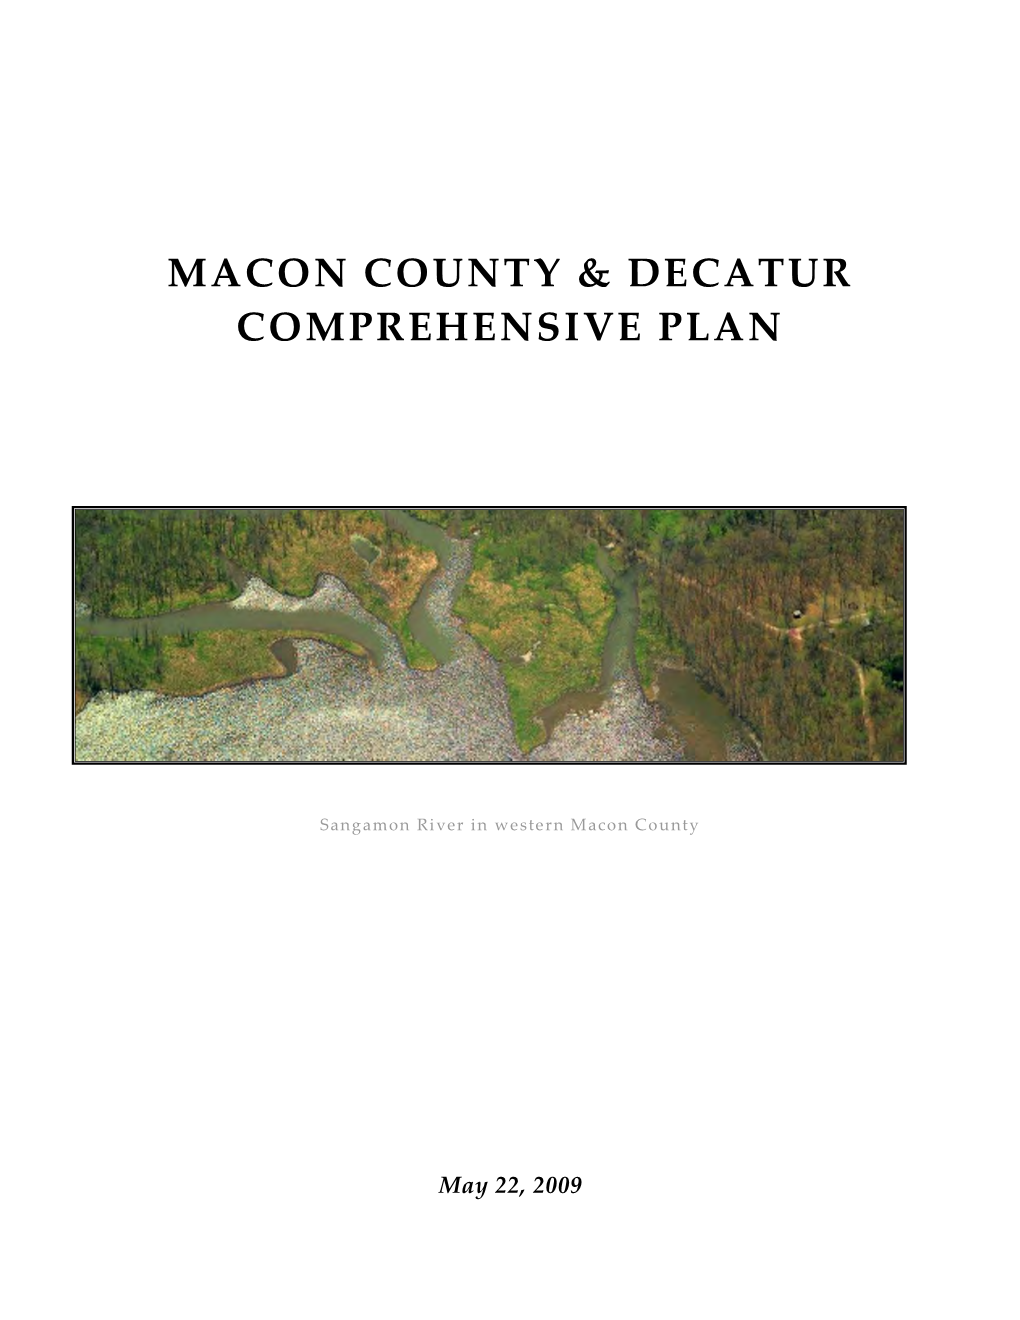 Decatur/Macon County Comprehensive